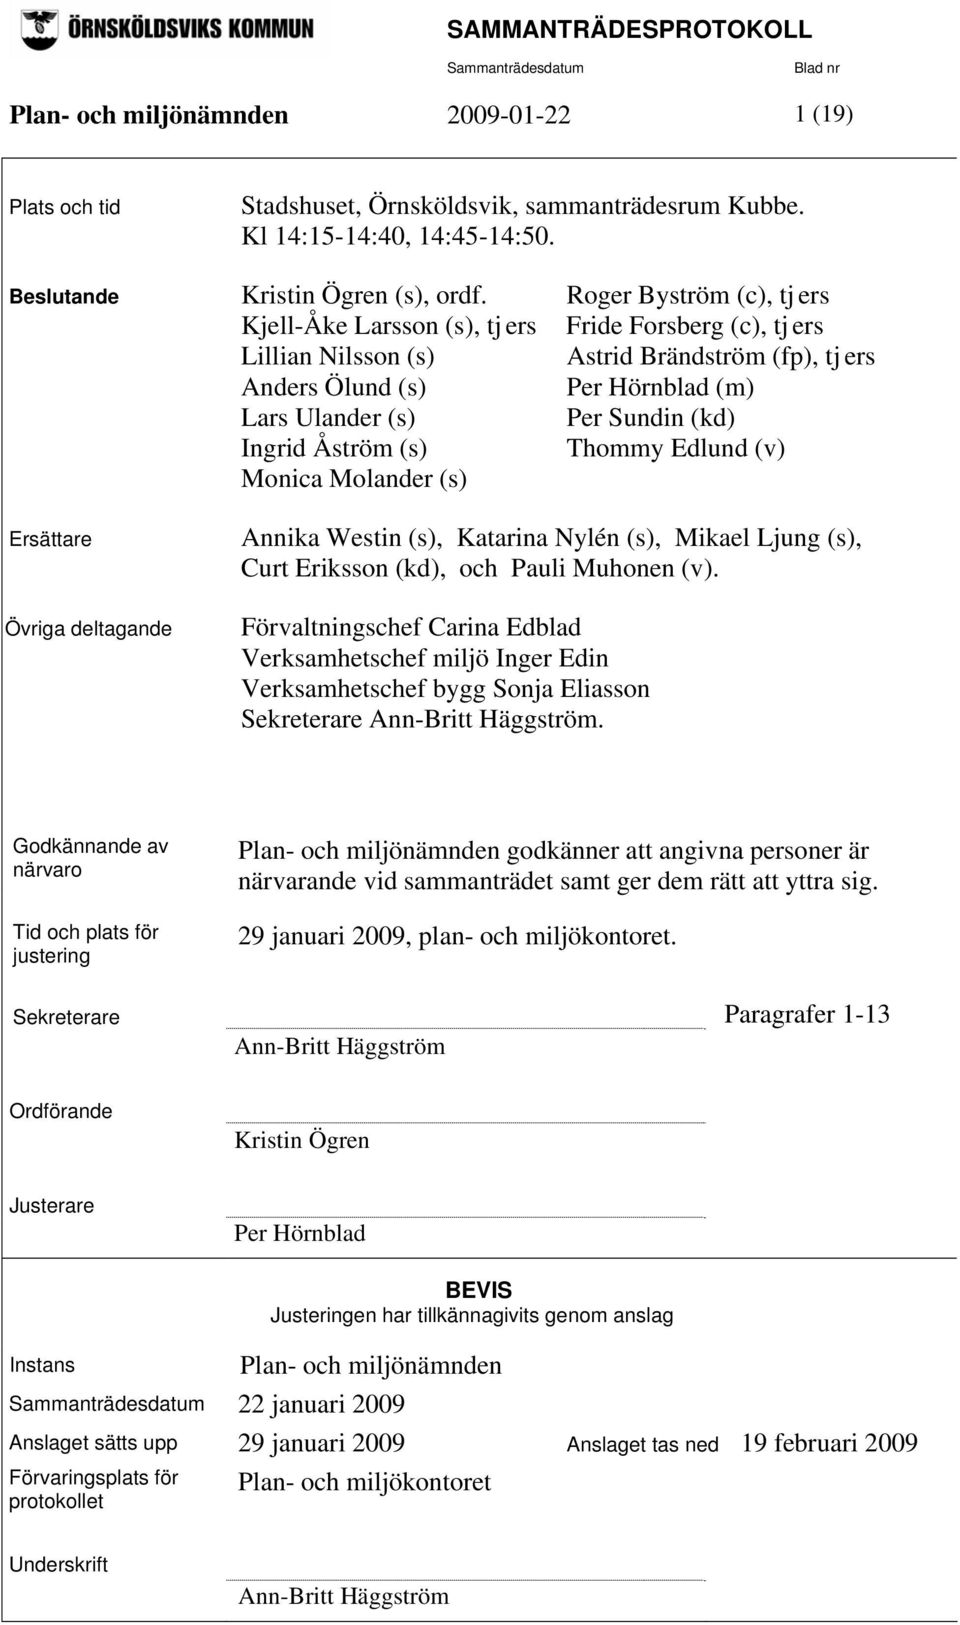 (kd) Ingrid Åström (s) Thommy Edlund (v) Monica Molander (s) Ersättare Övriga deltagande Annika Westin (s), Katarina Nylén (s), Mikael Ljung (s), Curt Eriksson (kd), och Pauli Muhonen (v).